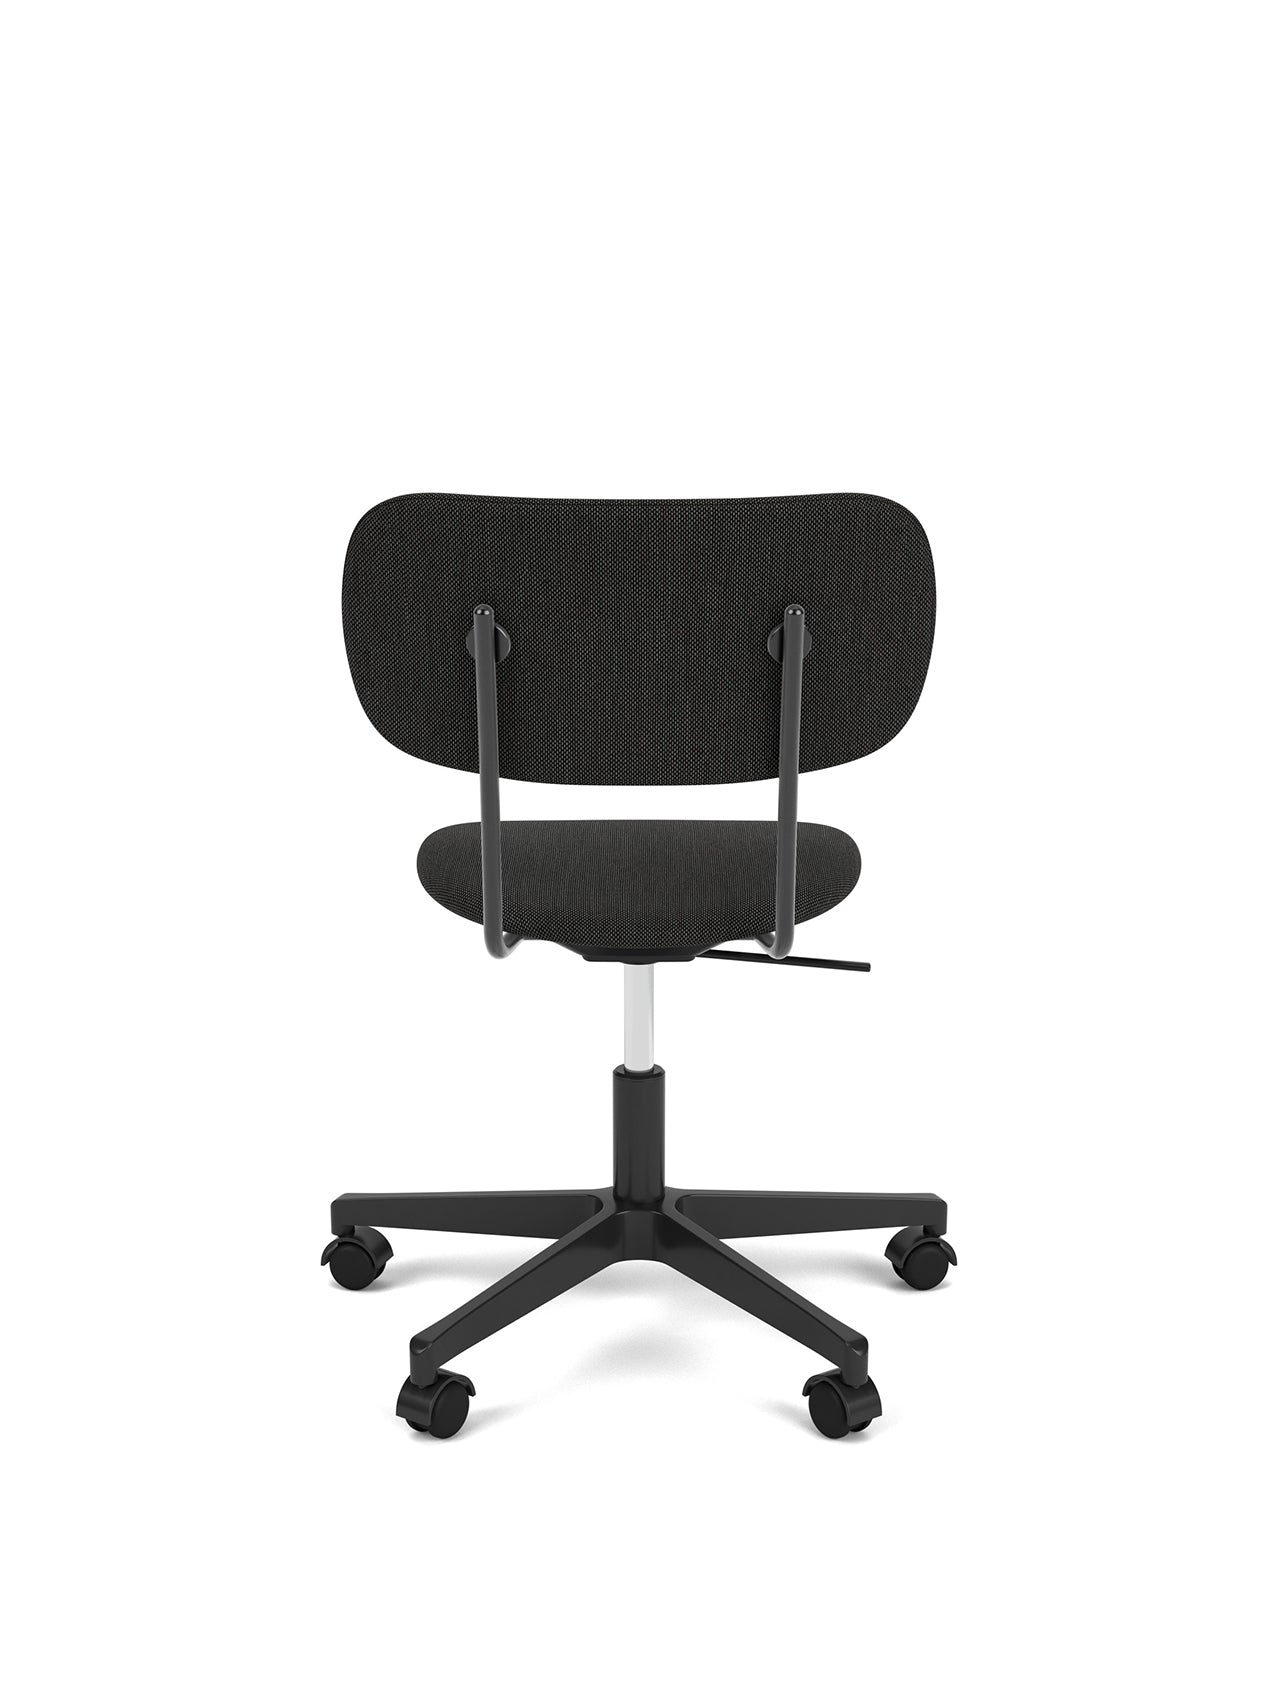 Co Task Chair, Fully Upholstered, Black base